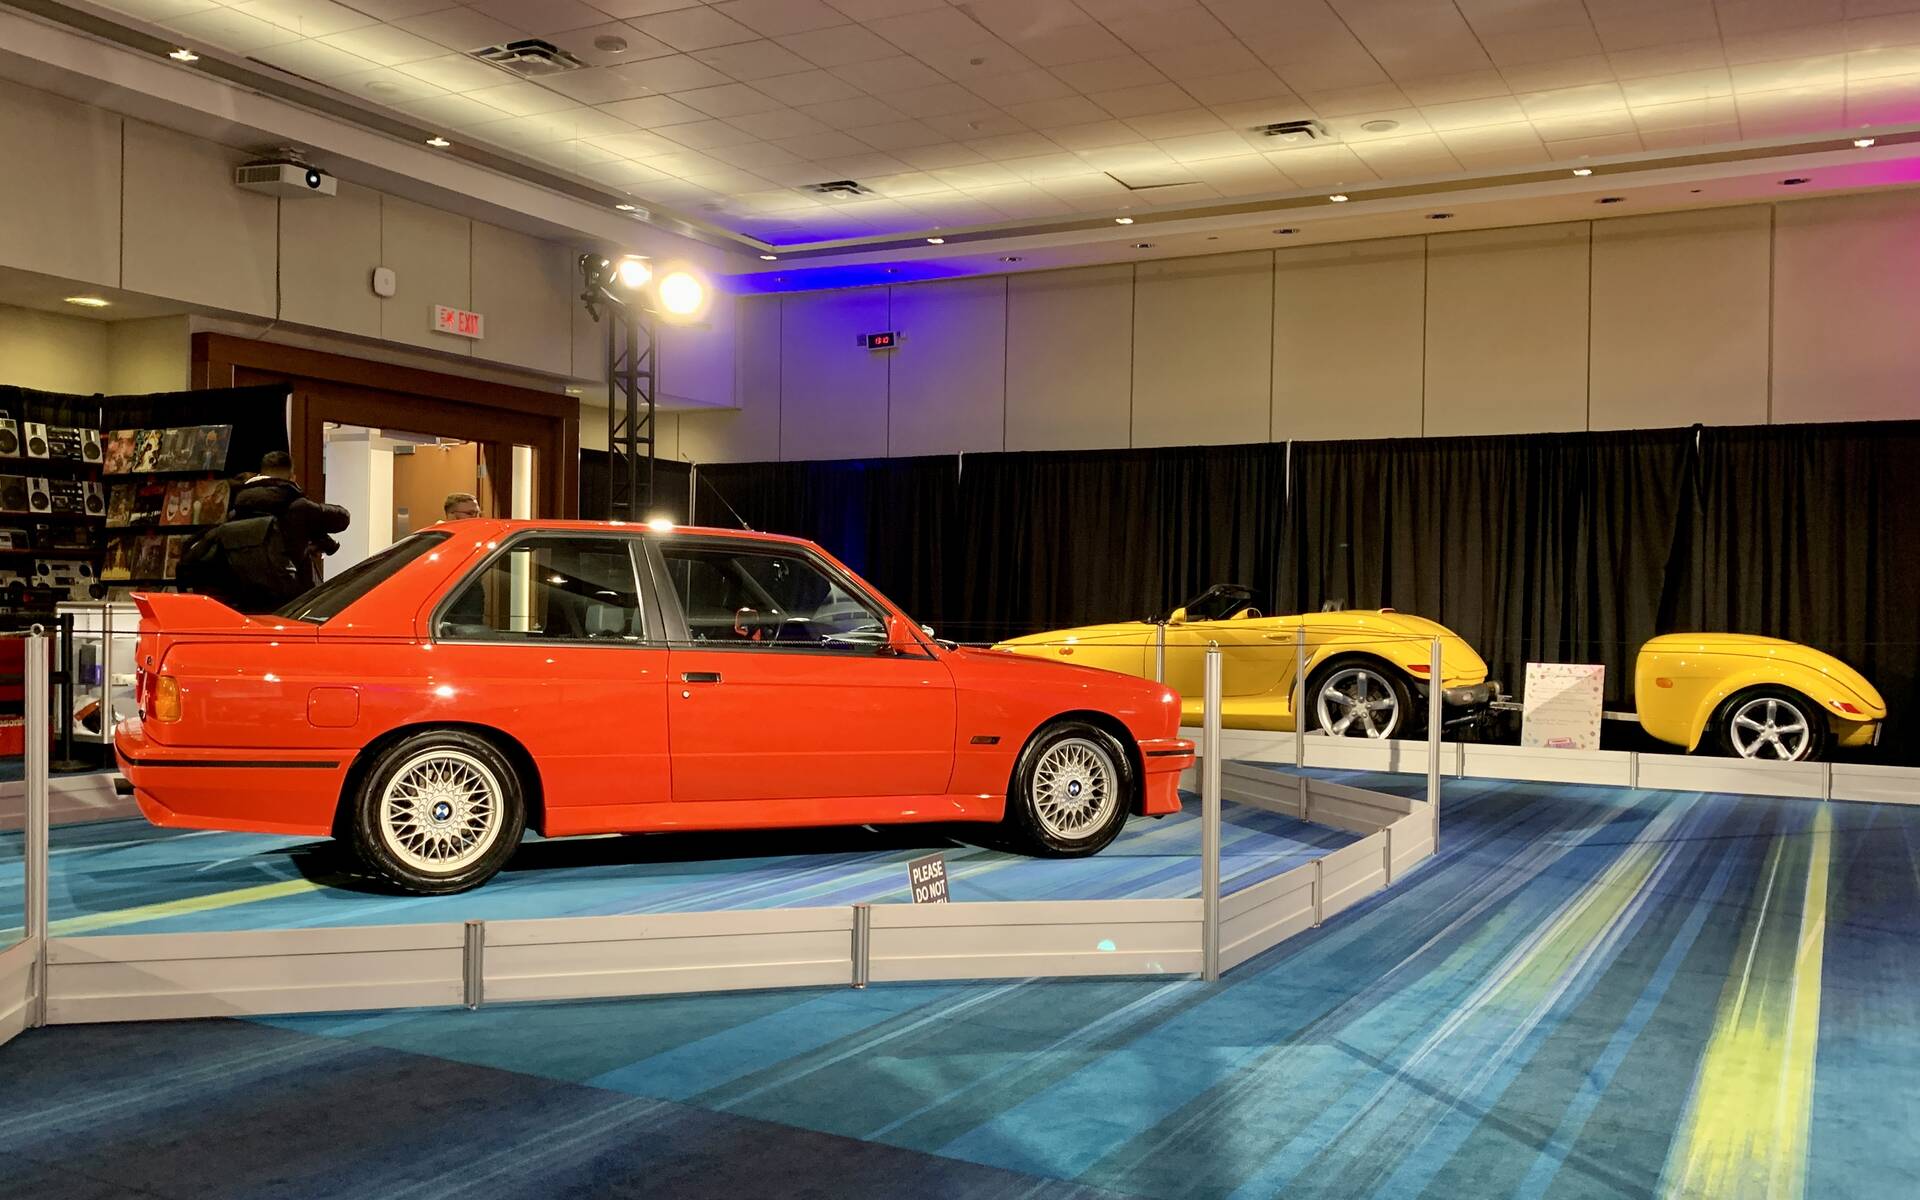 Salon de l'auto de Toronto: hommage aux années 1980 et 1990 562516-salon-de-l-auto-de-toronto-hommage-aux-annees-1980-et-1990